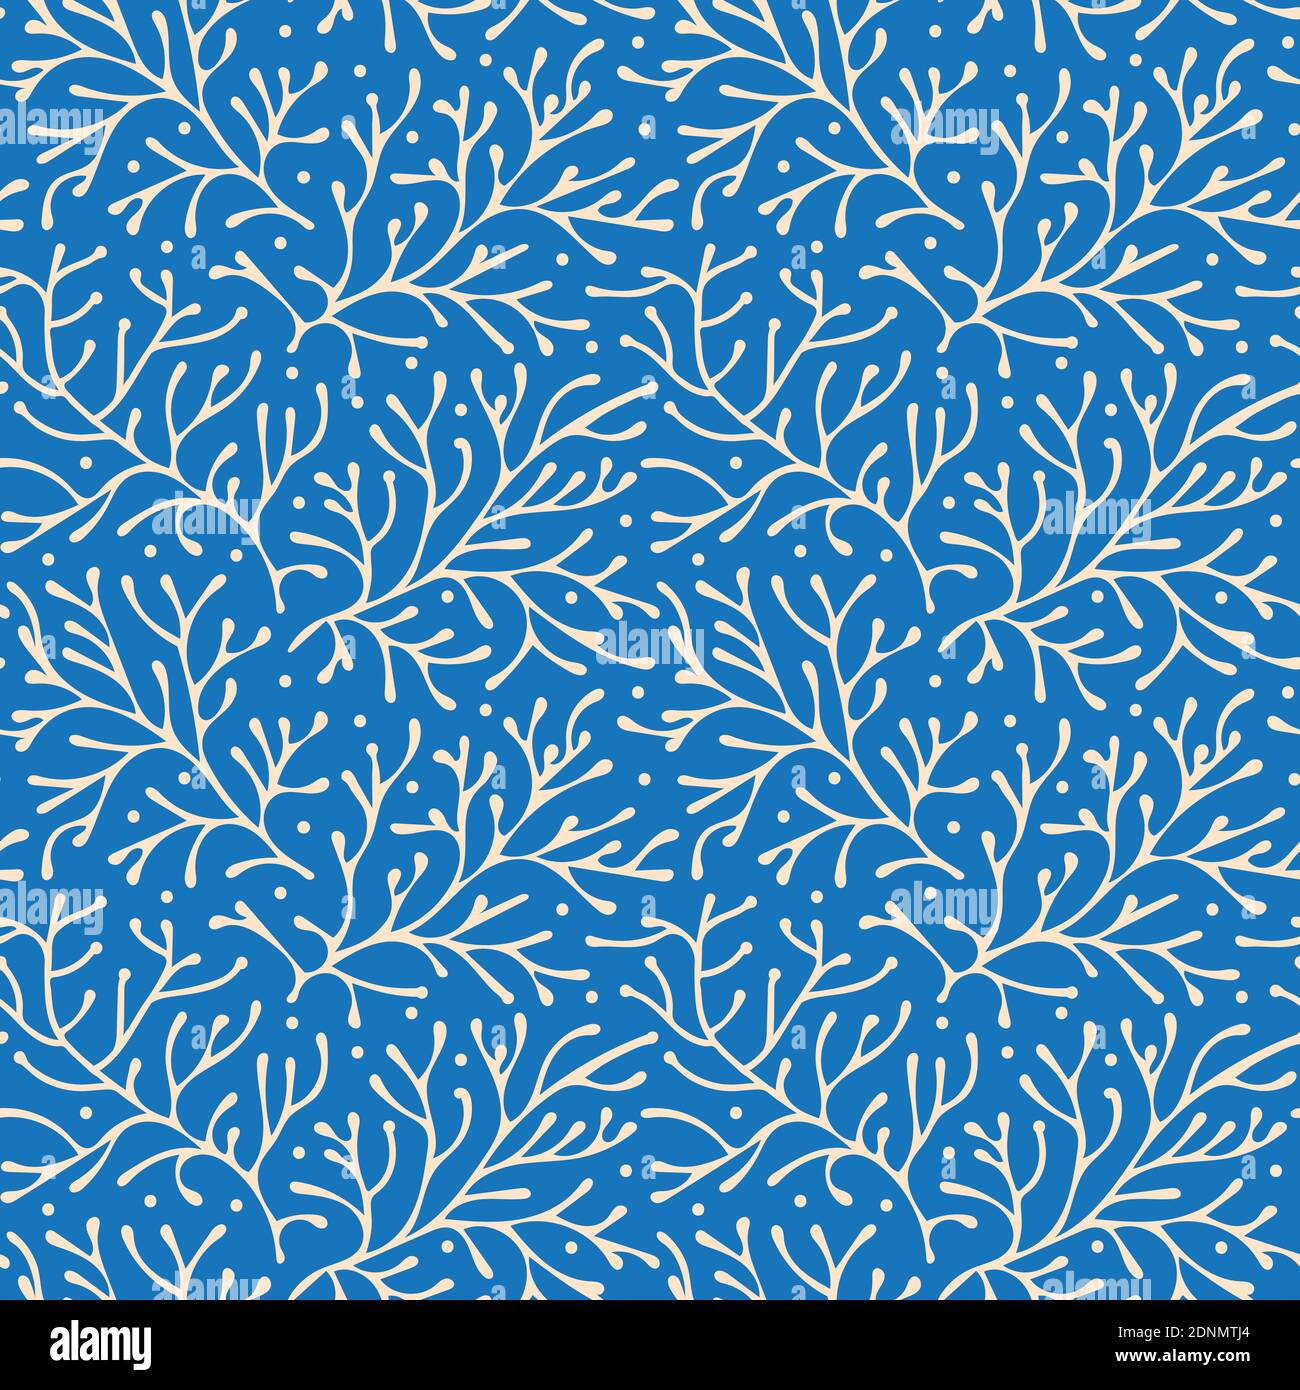 Abstrakt floral nahtlose Muster Vektor, beige Zweige auf blauem Hintergrund Stock Vektor